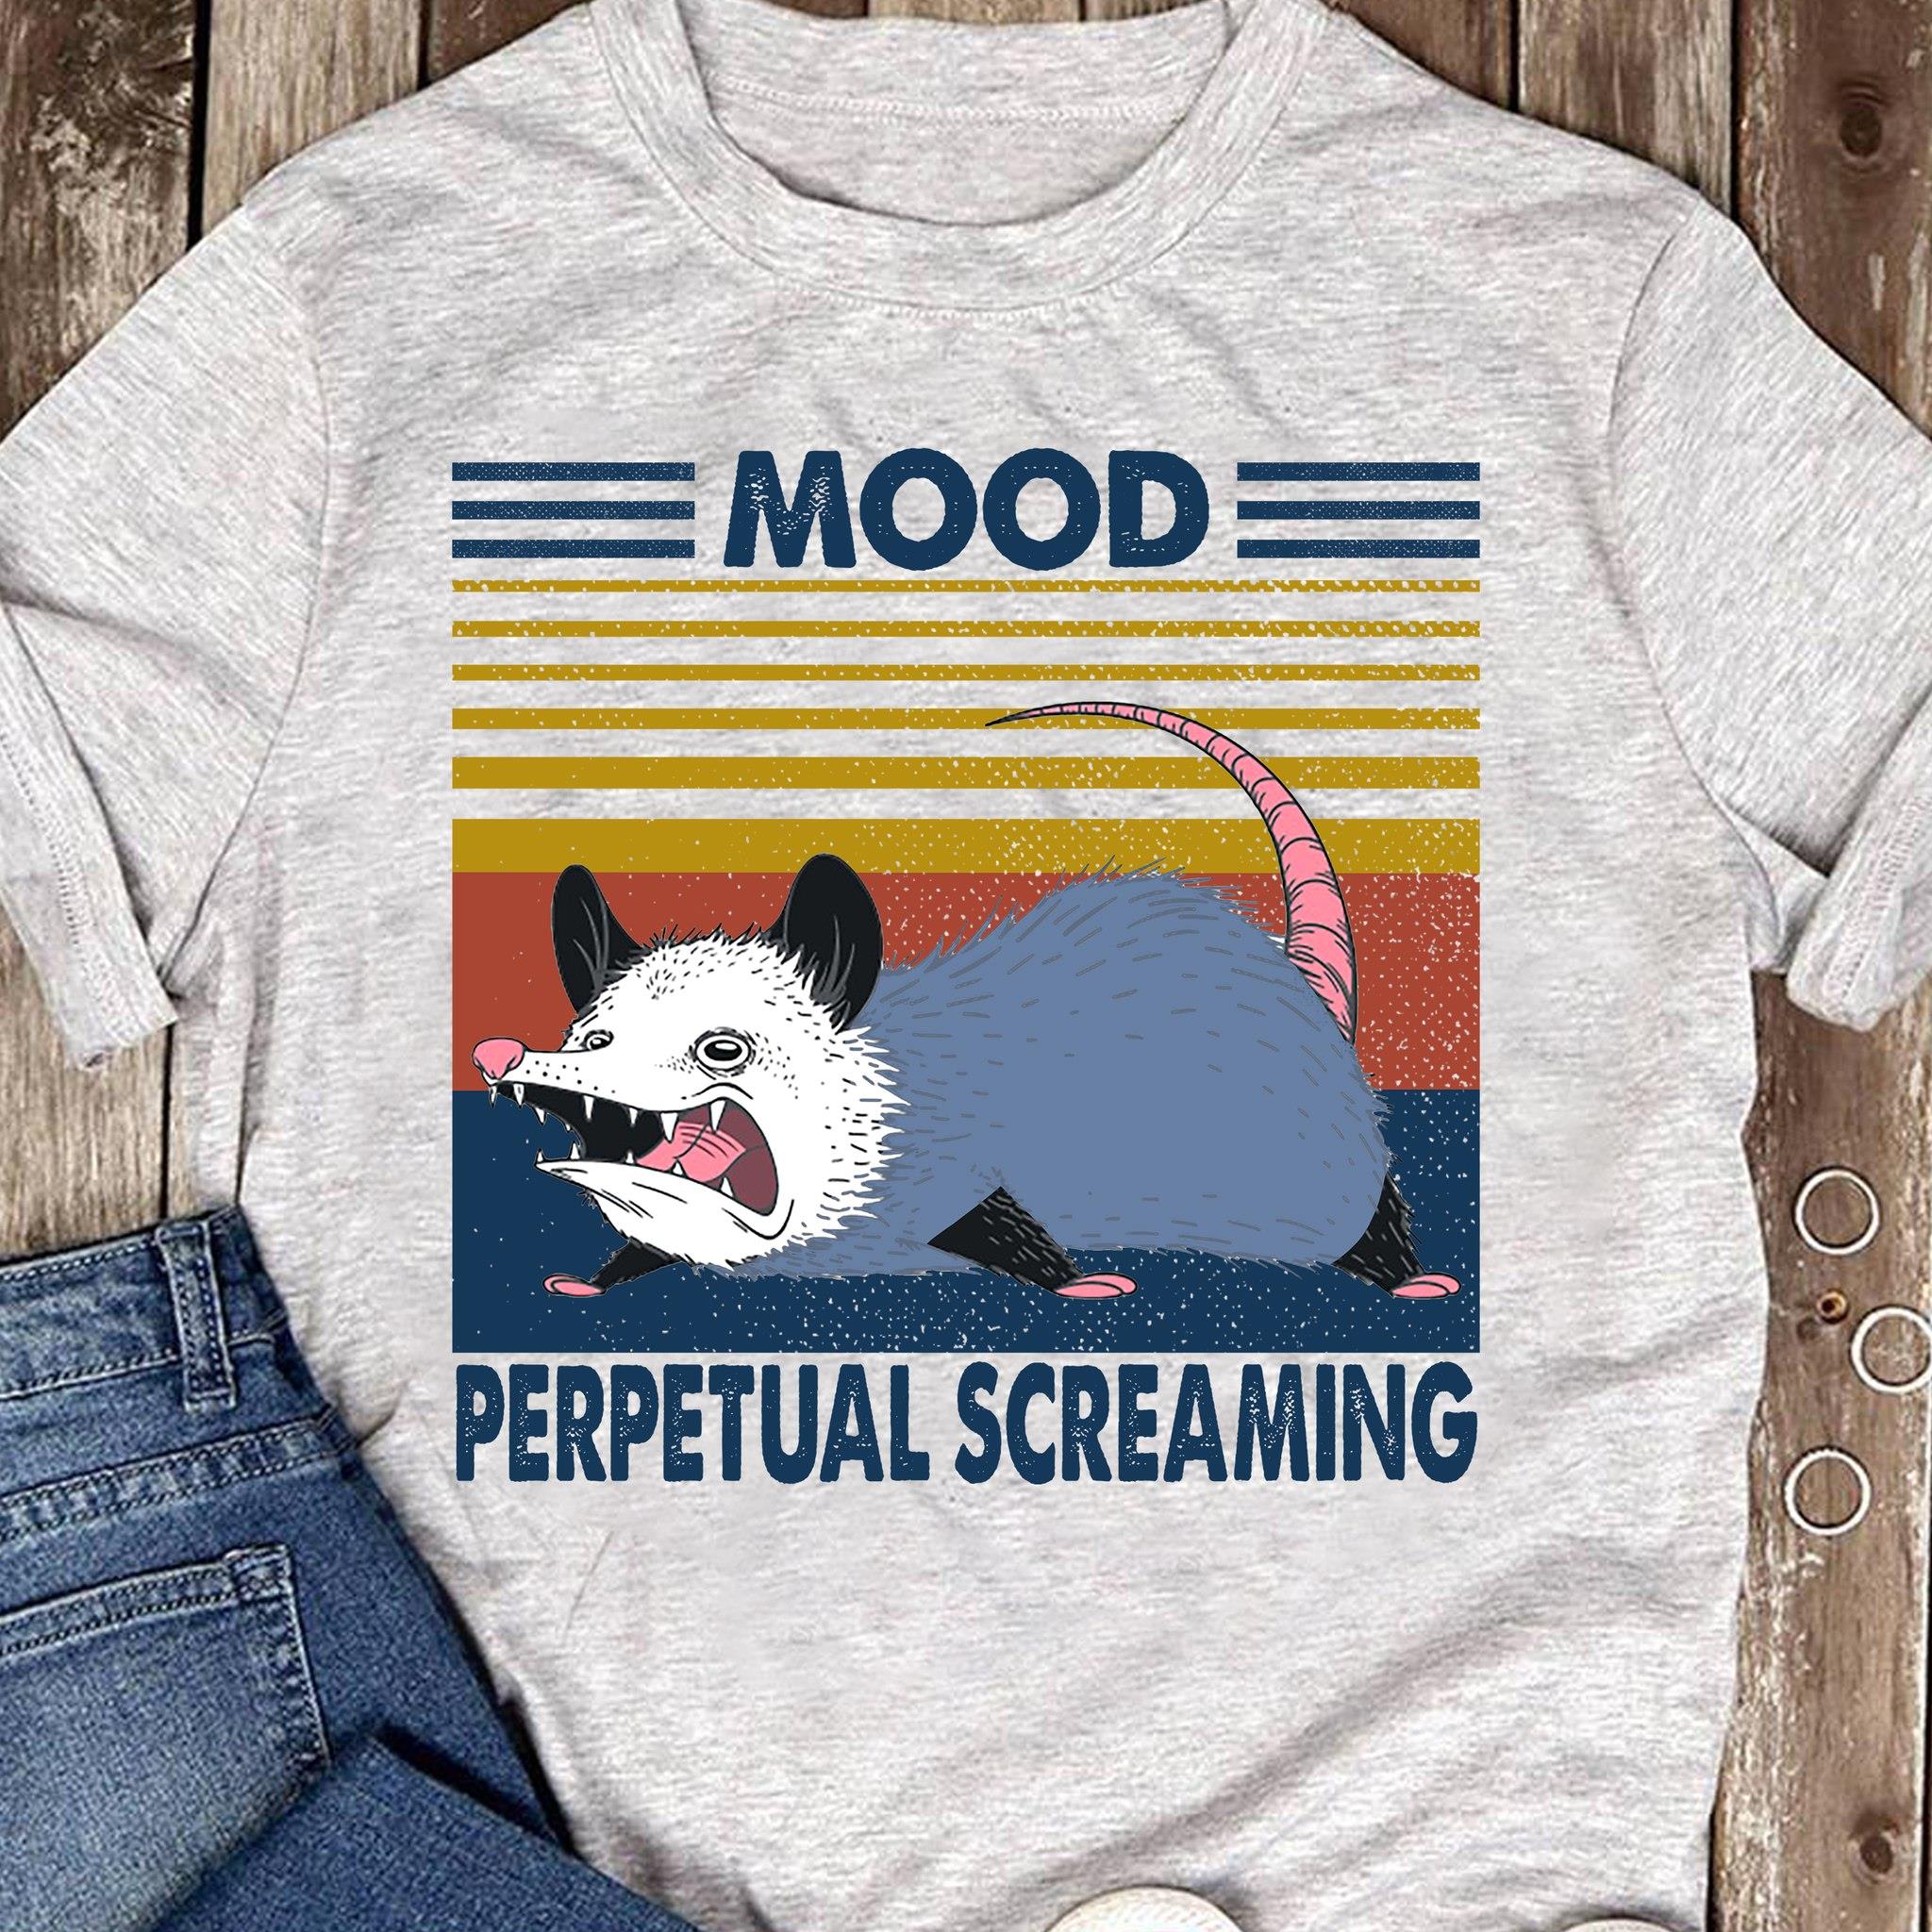 Mood Perpetual Screaming Shirt